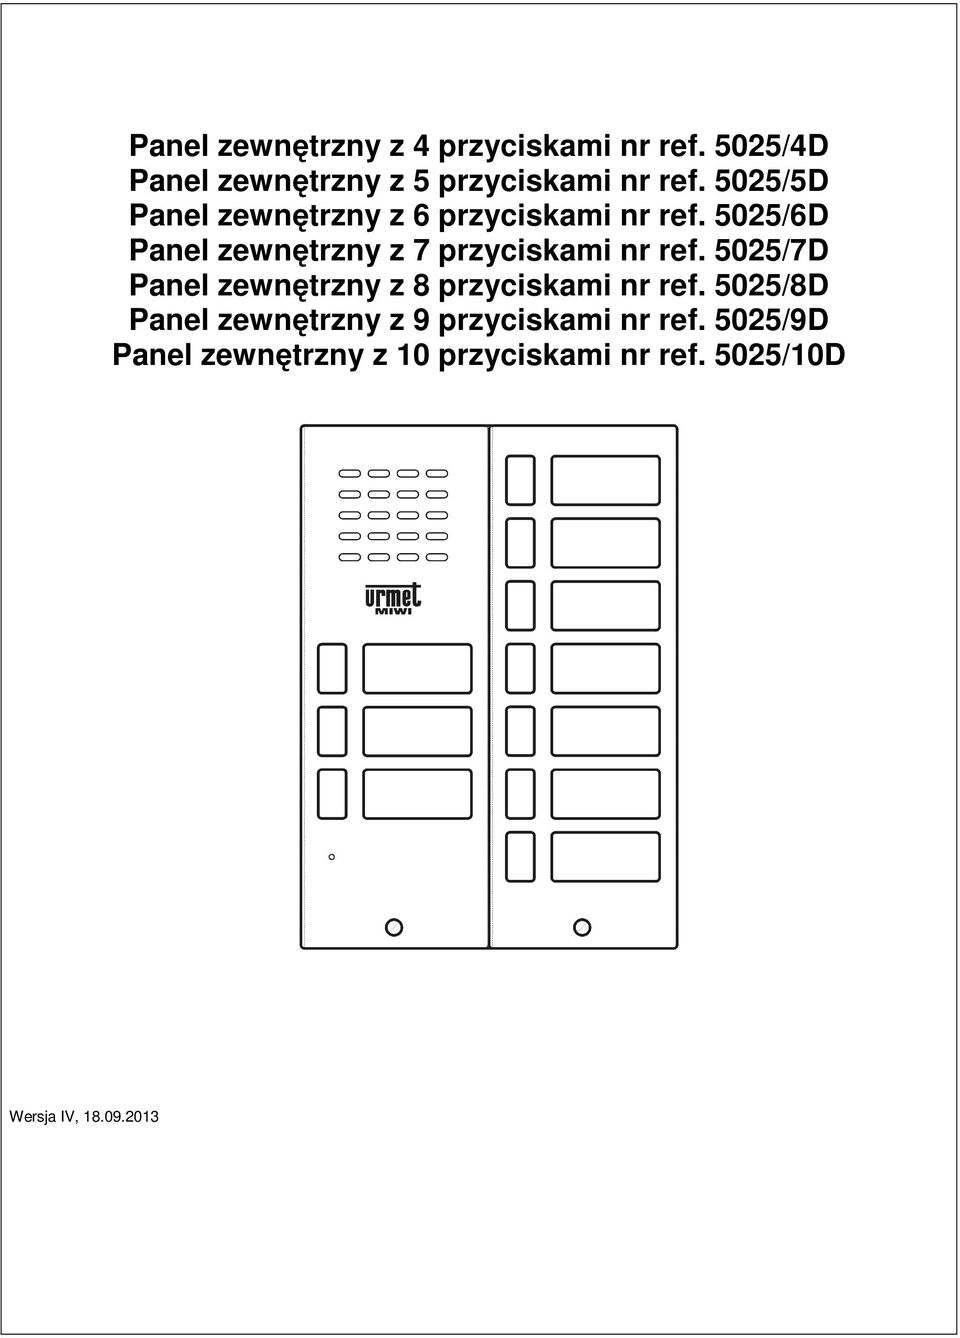 5025/5D Panel zewnętrzny z 6 przyciskami nr ref.